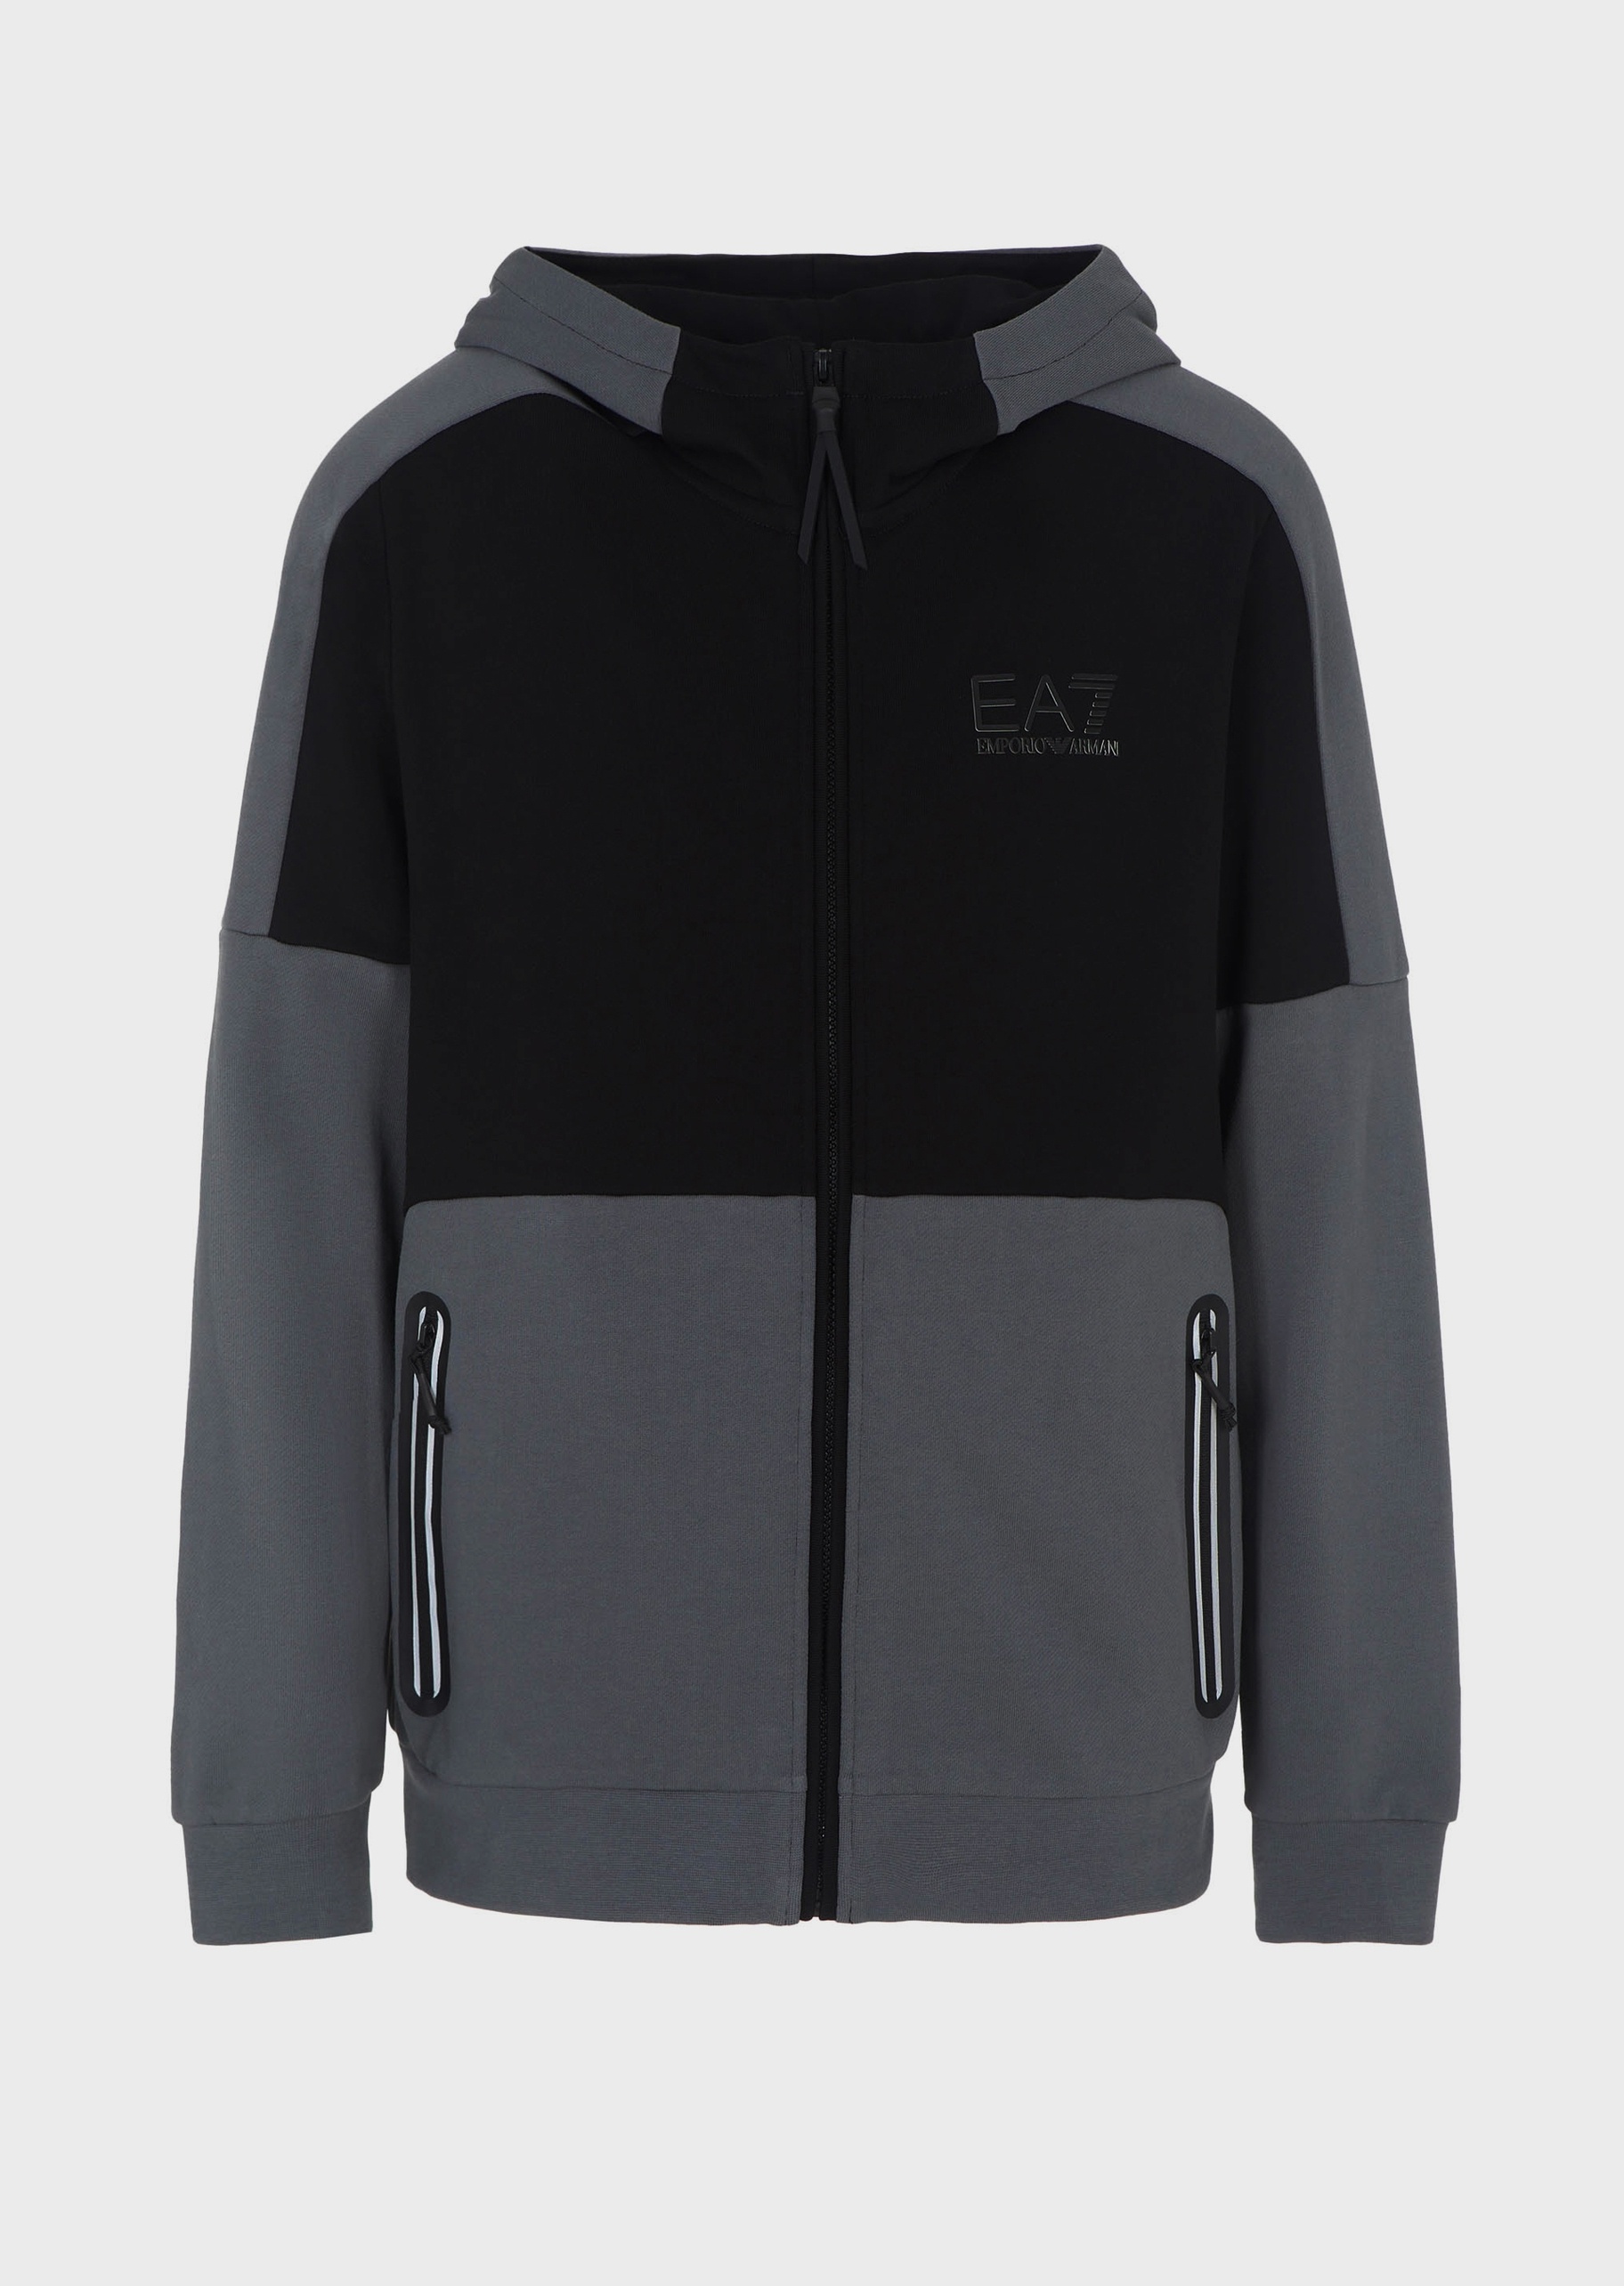 EA7 男士全棉合身长袖连帽落肩健身训练卫衣外套